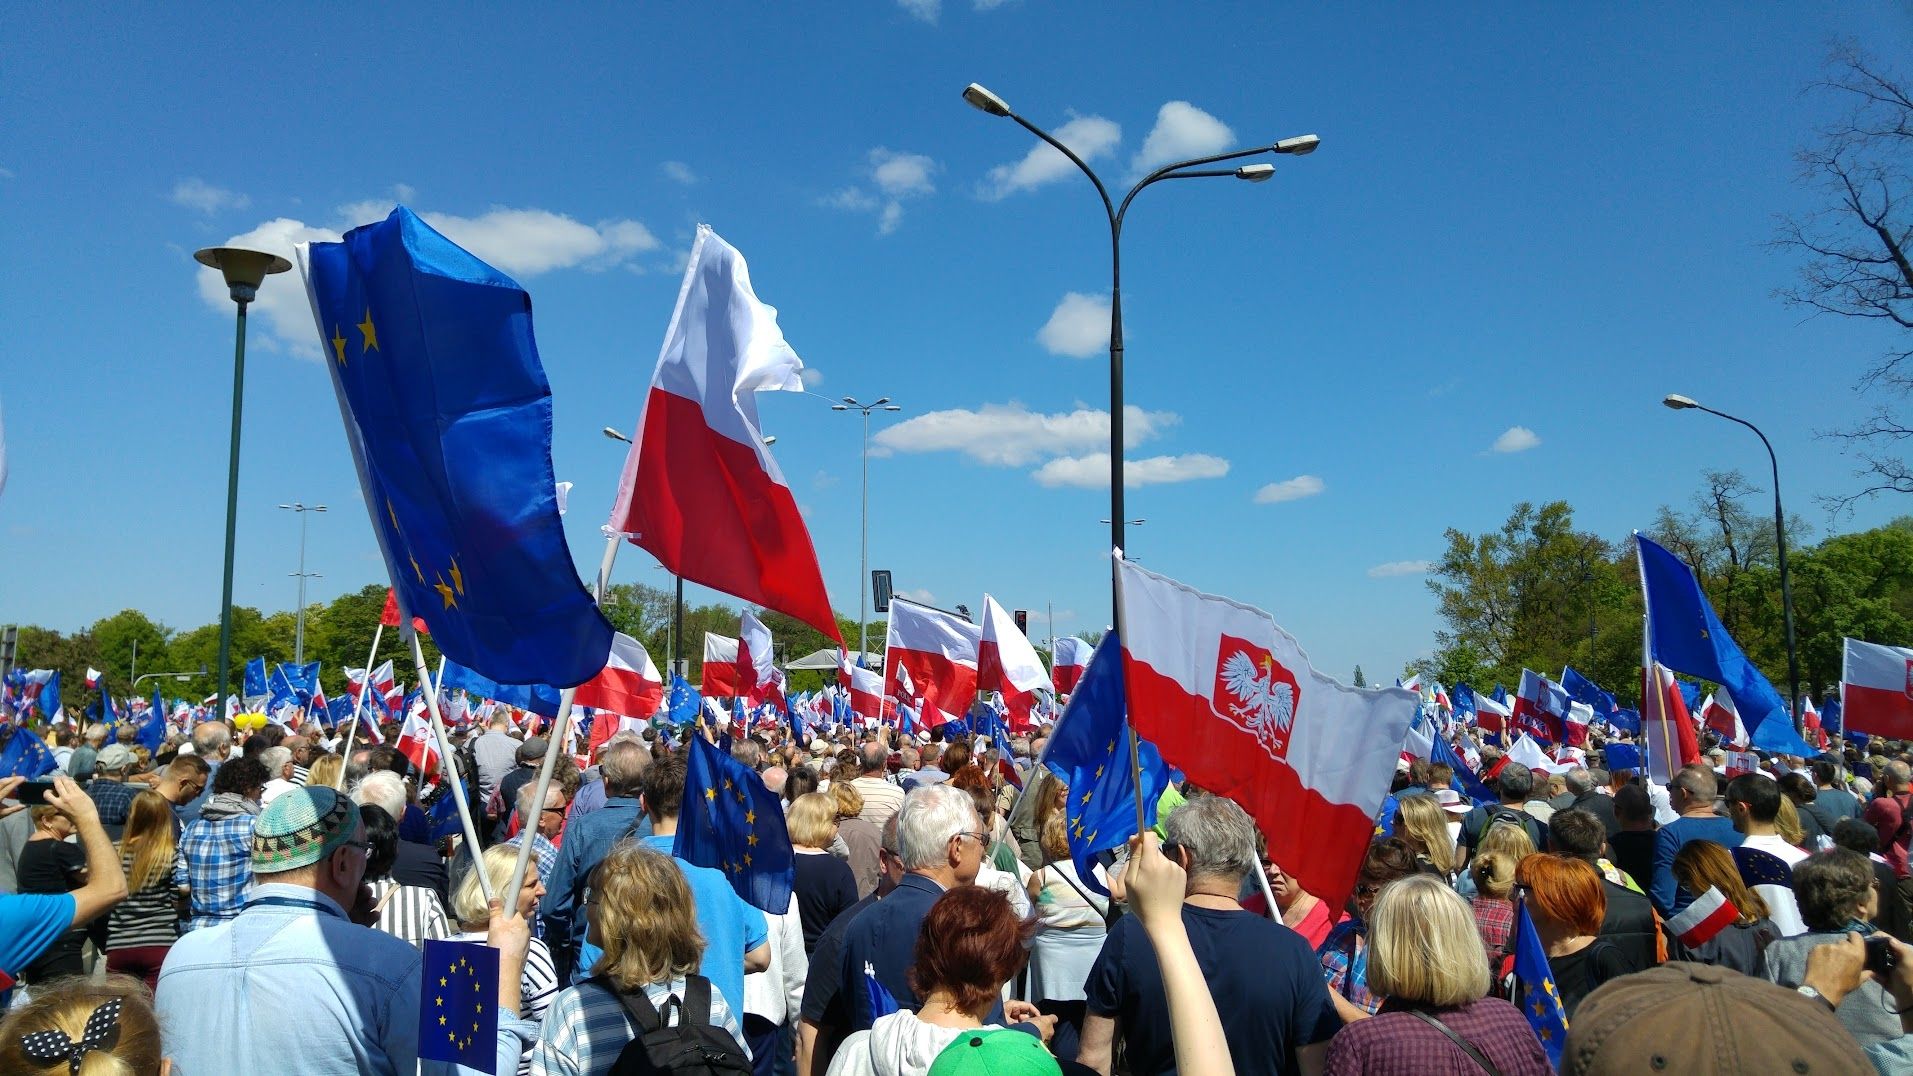 jedna z proeuropejskich manifestacji na początku poprzedniej kadencji sejmu